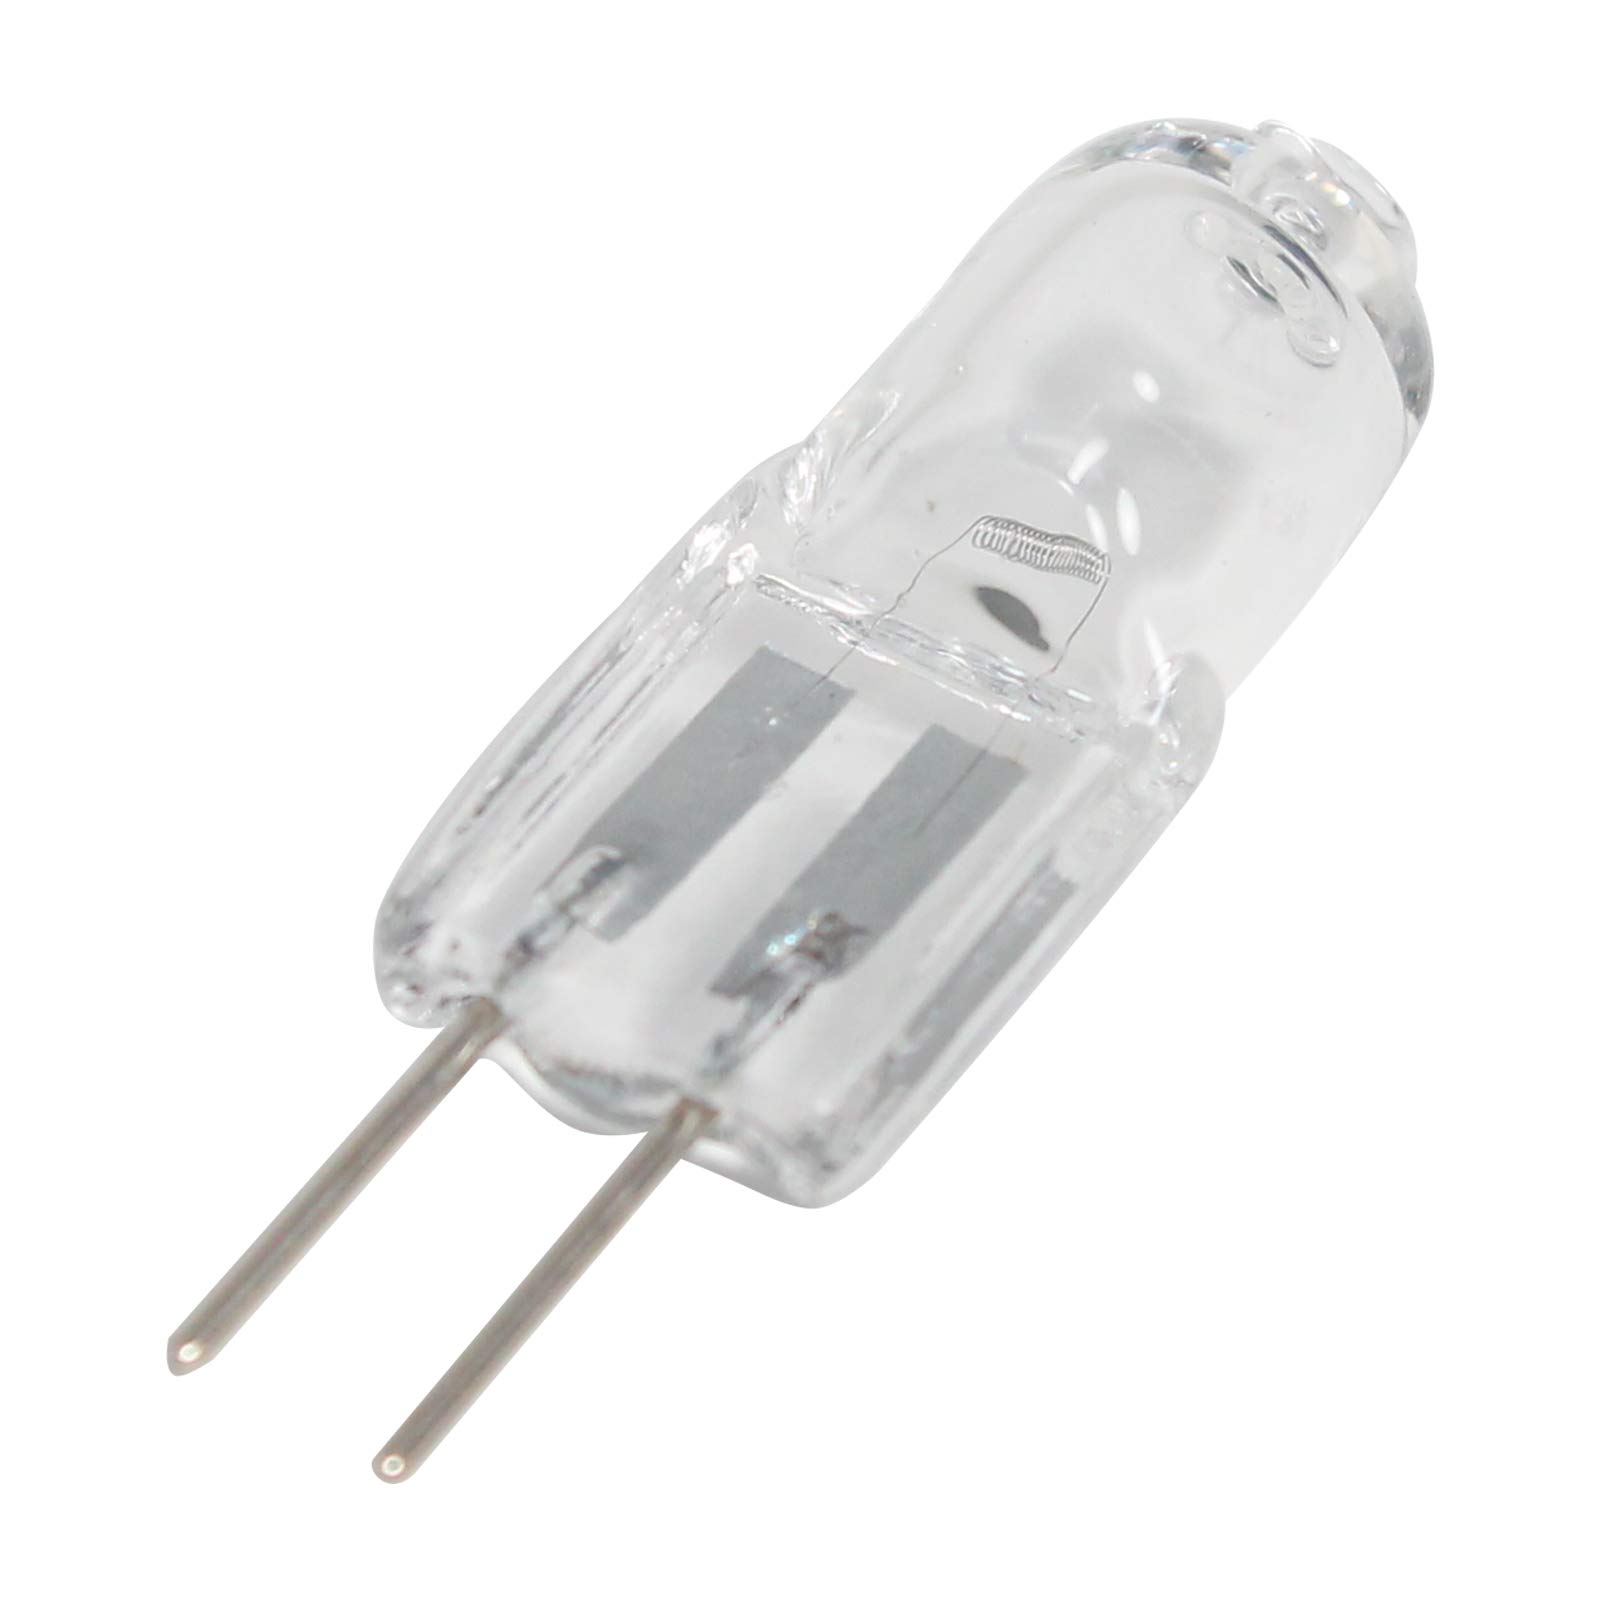 Whirlpool Range Oven Halogen Light Bulb – 5W. Part #WP4452164